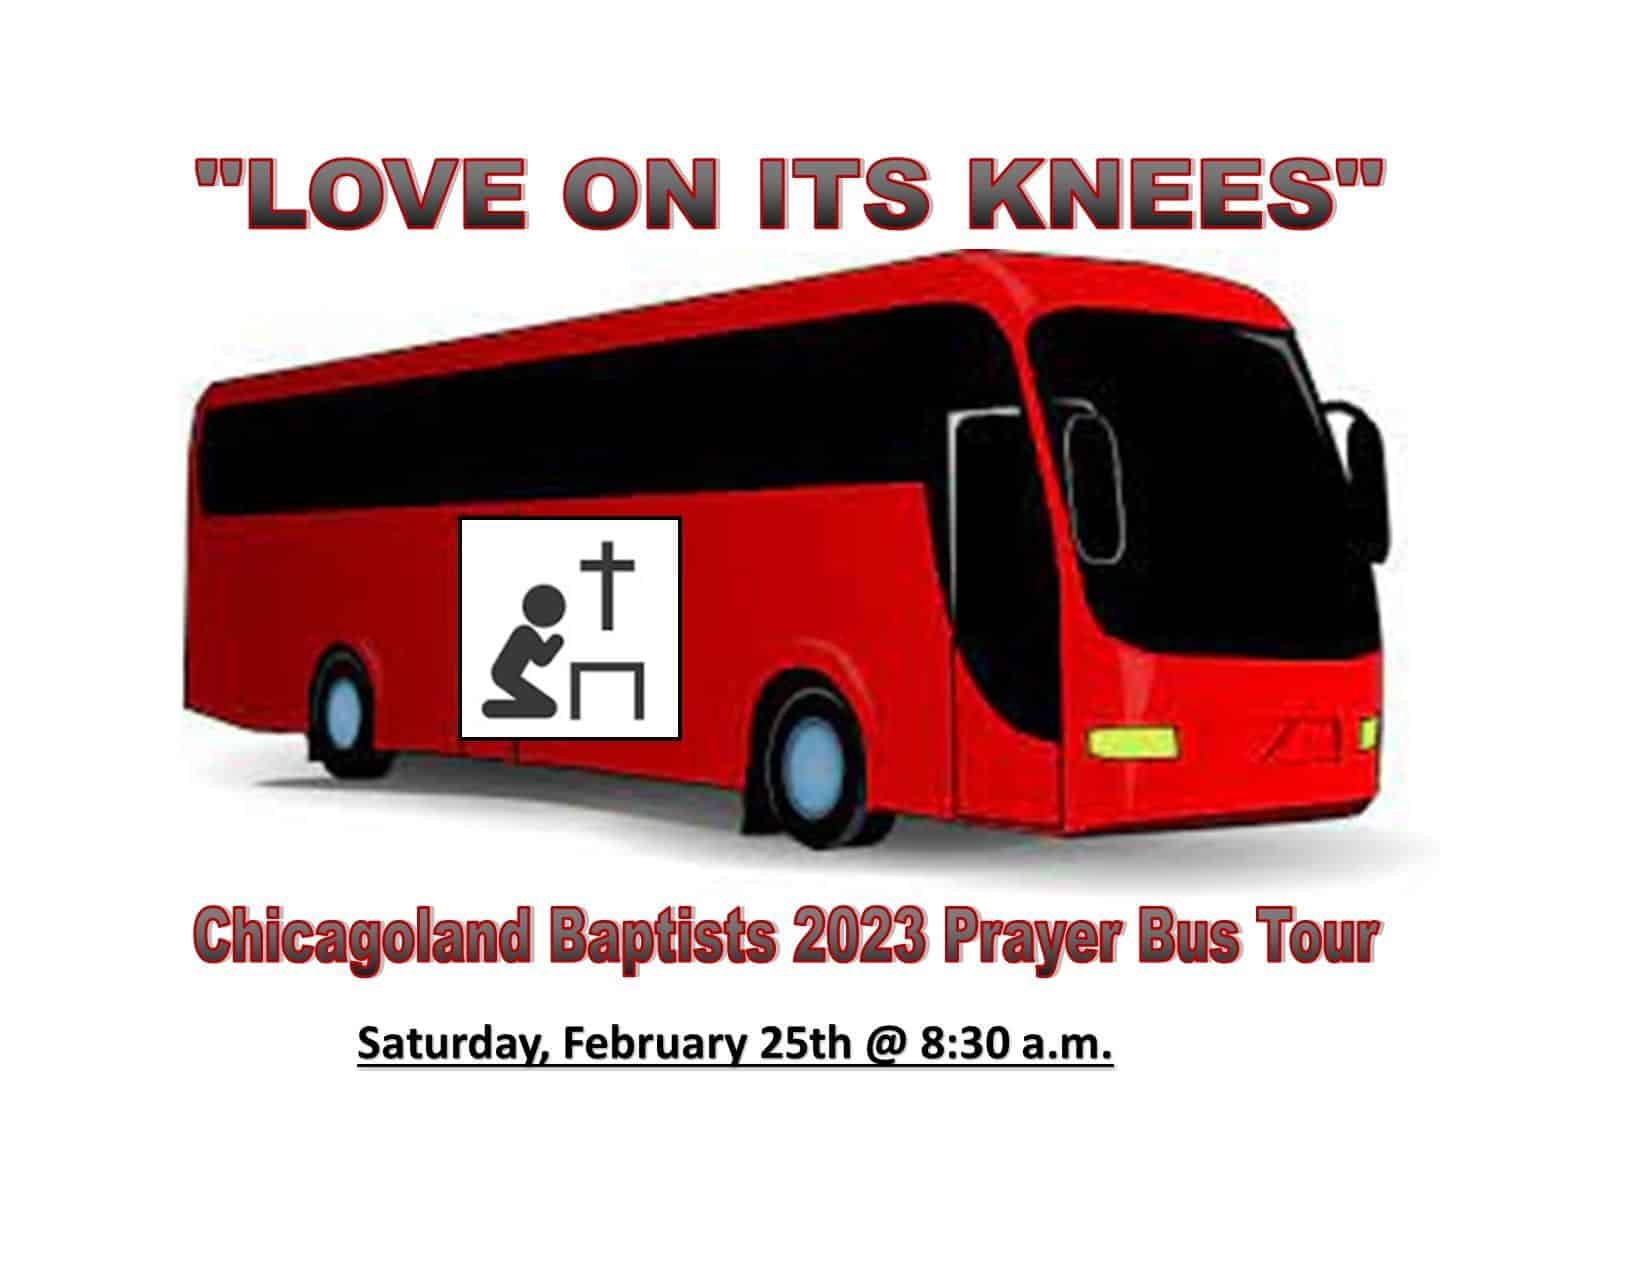 Chicagloland Bus Tour